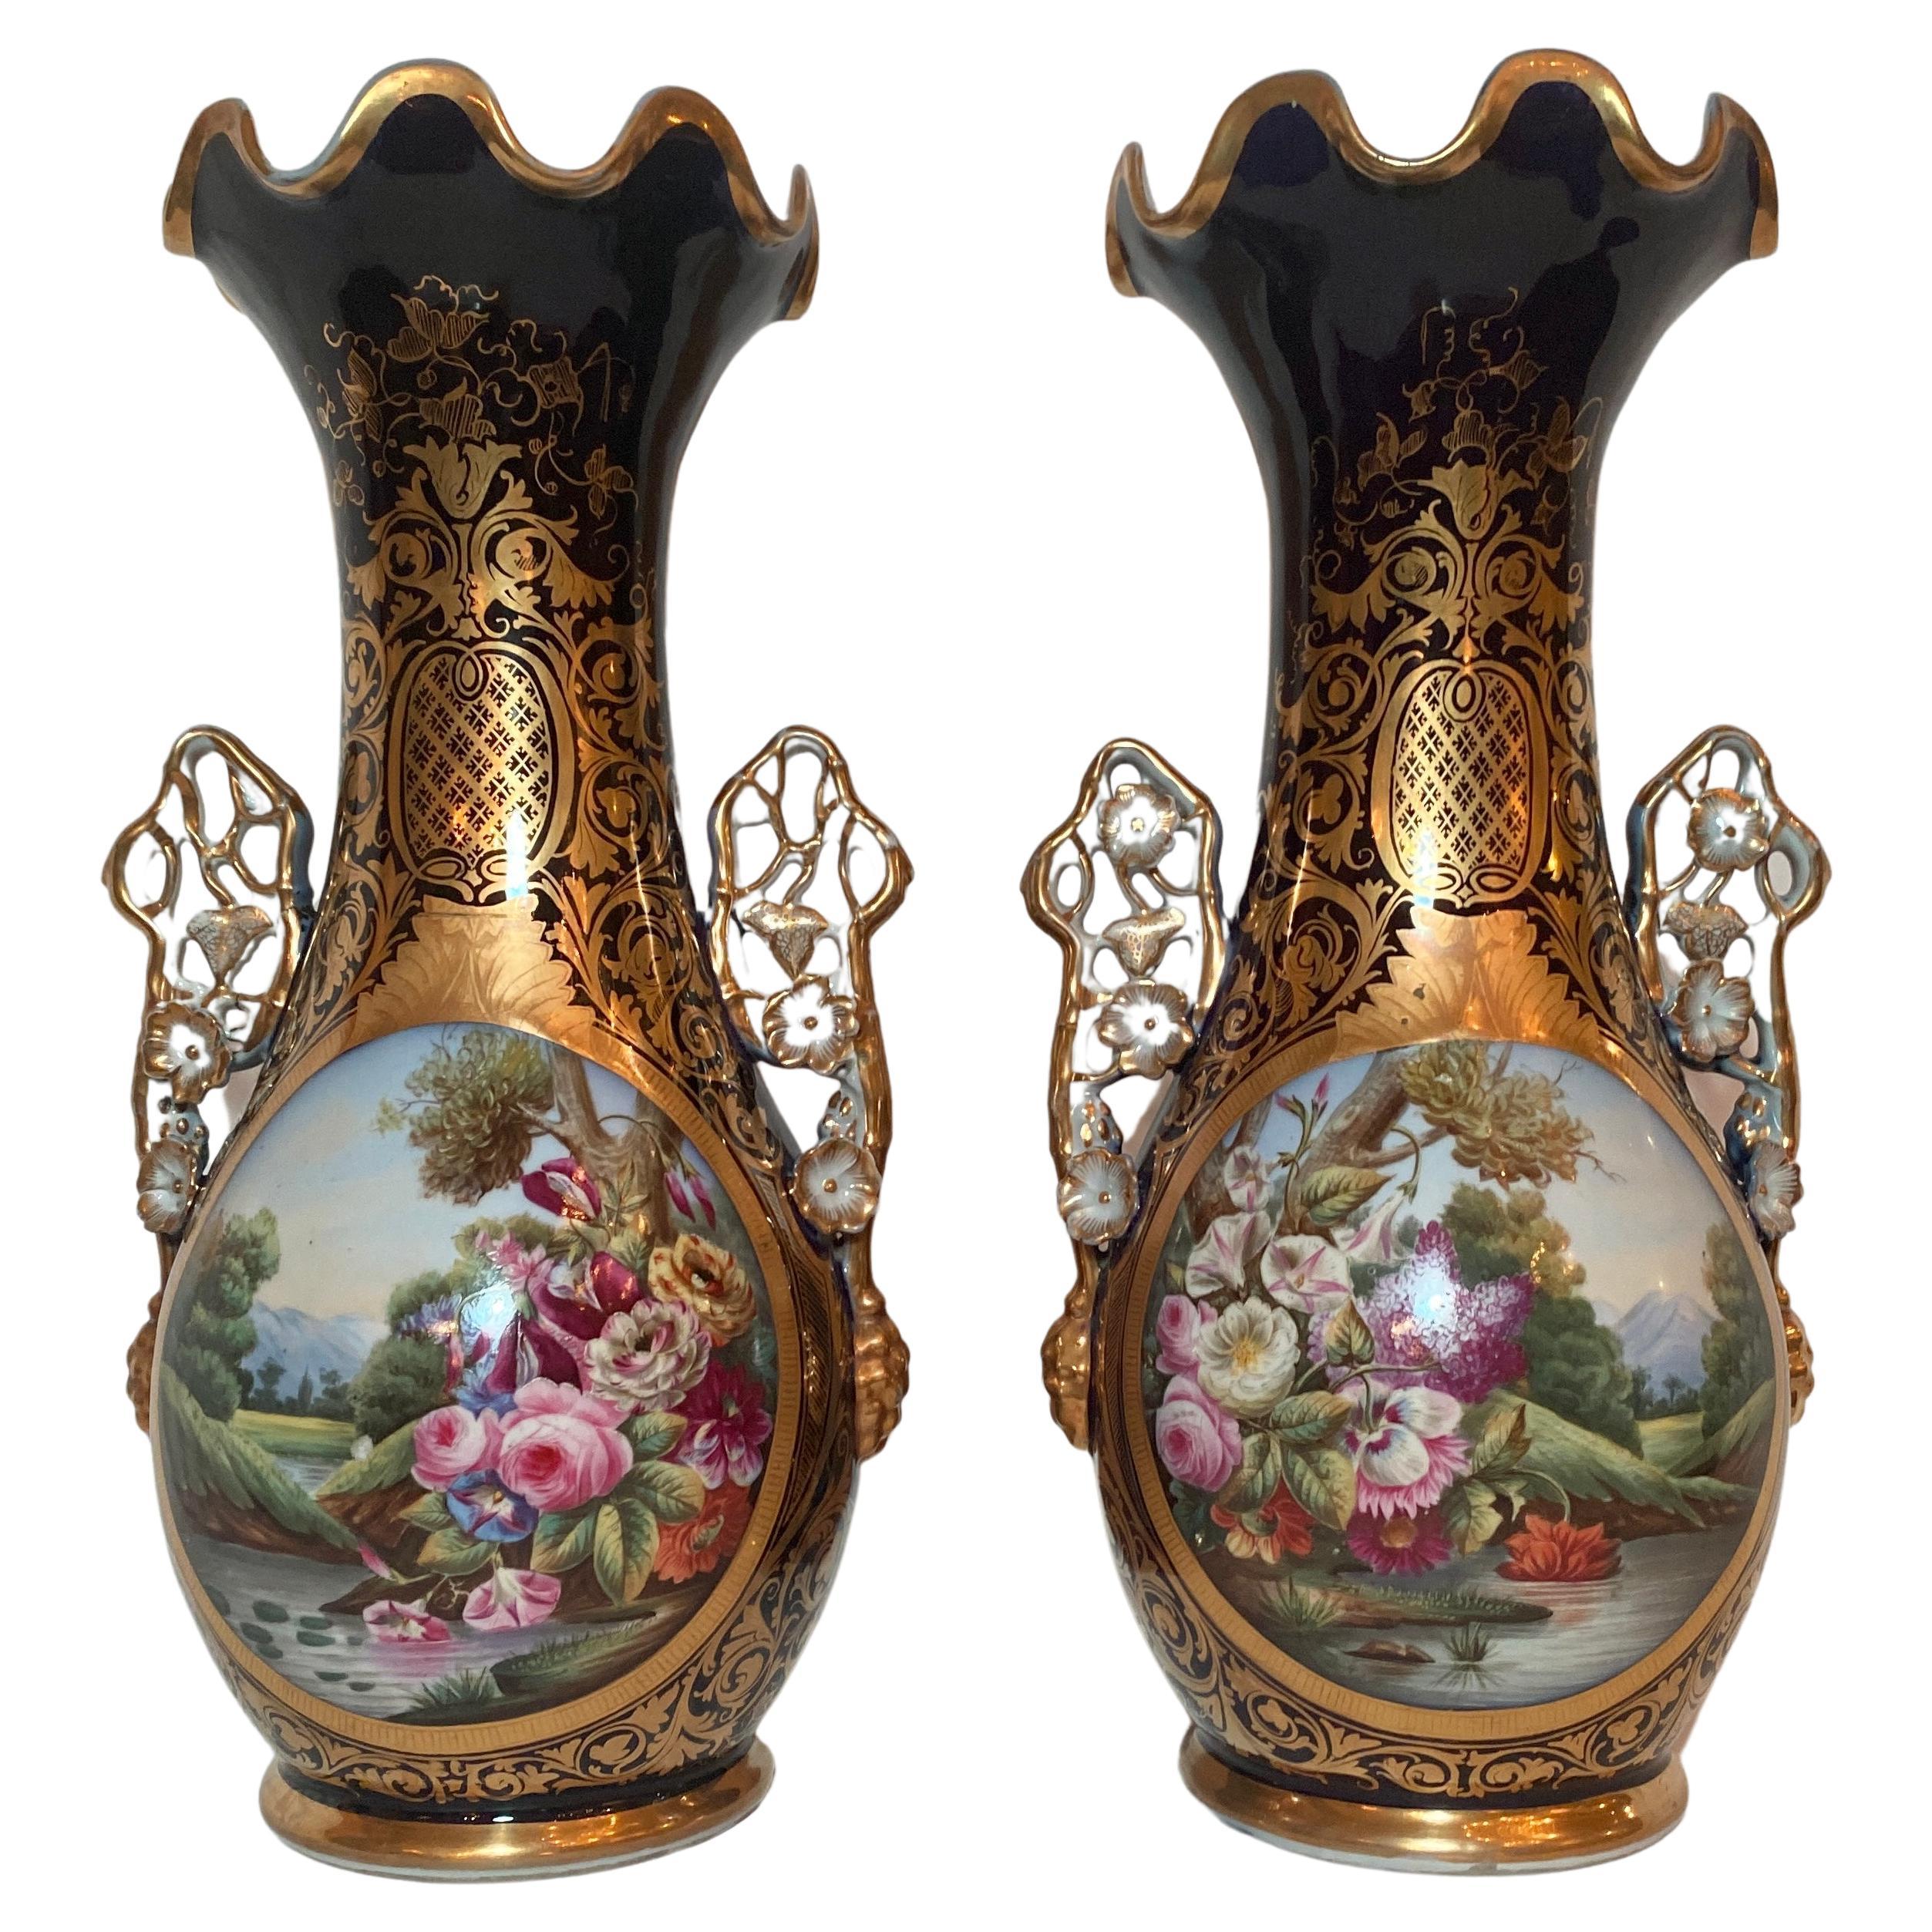 Paire d'urnes anciennes françaises « Vieux Paris » en porcelaine émaillée et cobalt, vers 1845-65